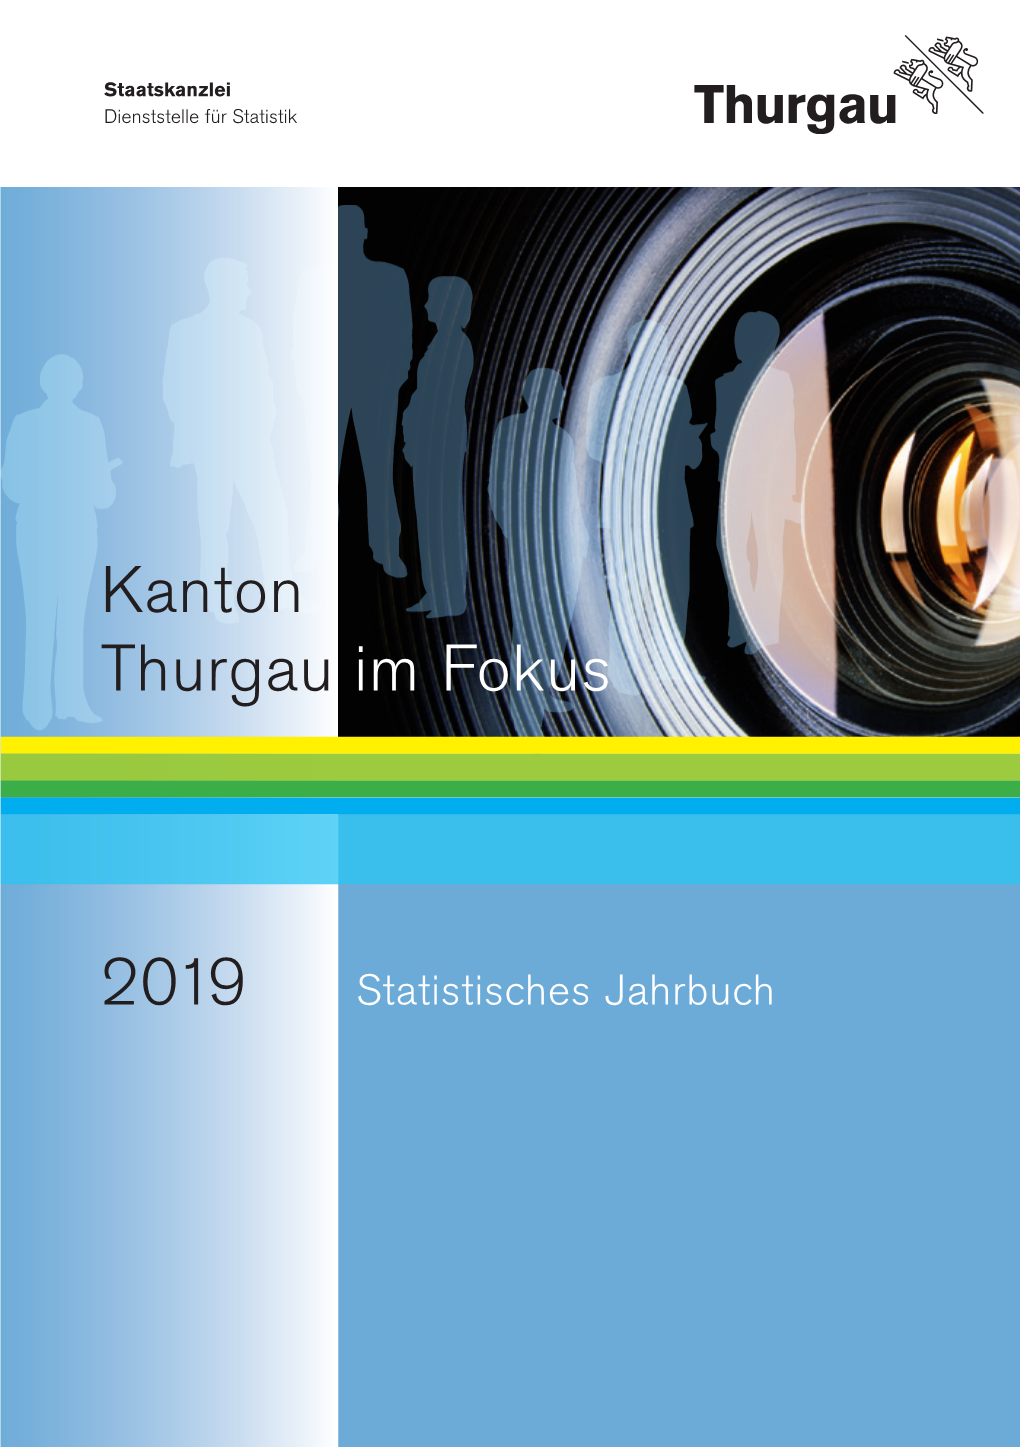 2019 Statistisches Jahrbuch.Pdf Herunterladen